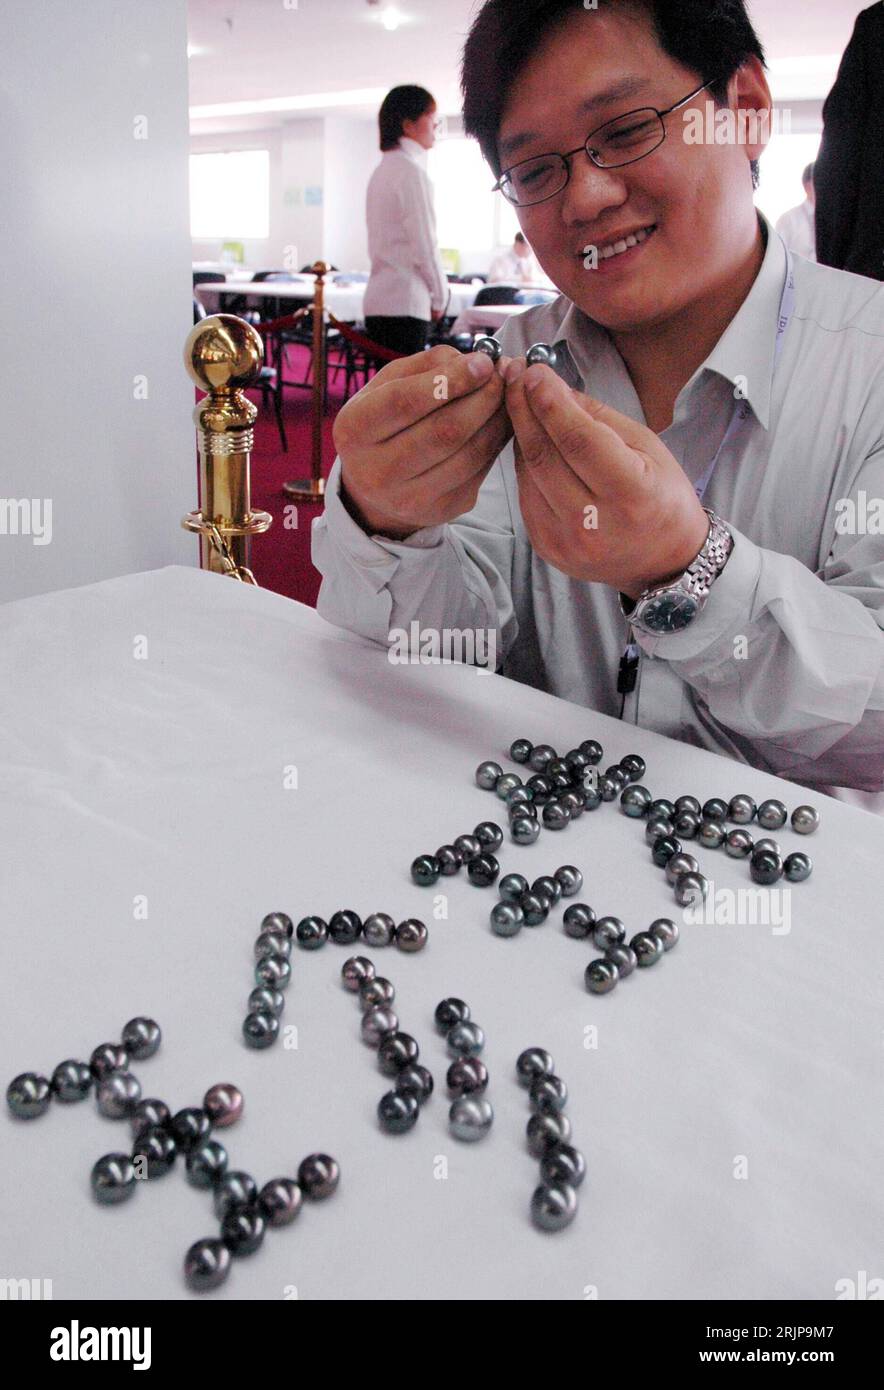 Bildnummer: 51134080  Datum: 24.02.2006  Copyright: imago/Xinhua Händler präsentiert seine schwarzen Perlen indem er aus ihnen das chinesische Wort für - Perle - legt - während der Eröffnung der internationalen Perlen-Messe in Suzhou PUBLICATIONxNOTxINxCHN, Personen , Objekte , optimistisch; 2006, Suzhou, Provinz Jiangsu, Mann, Männer, Geschäftsmann, Geschäftsmänner, lächeln, Schmuck, Schmuckstücke, Perle, Perlen, Luxus, Messe, Messen, schwarz, schwarze, internationale, Schriftzug; , hoch, Kbdig, , Einzelhandel, Wirtschaft, China / Verkäufer, Großhandel Stock Photo